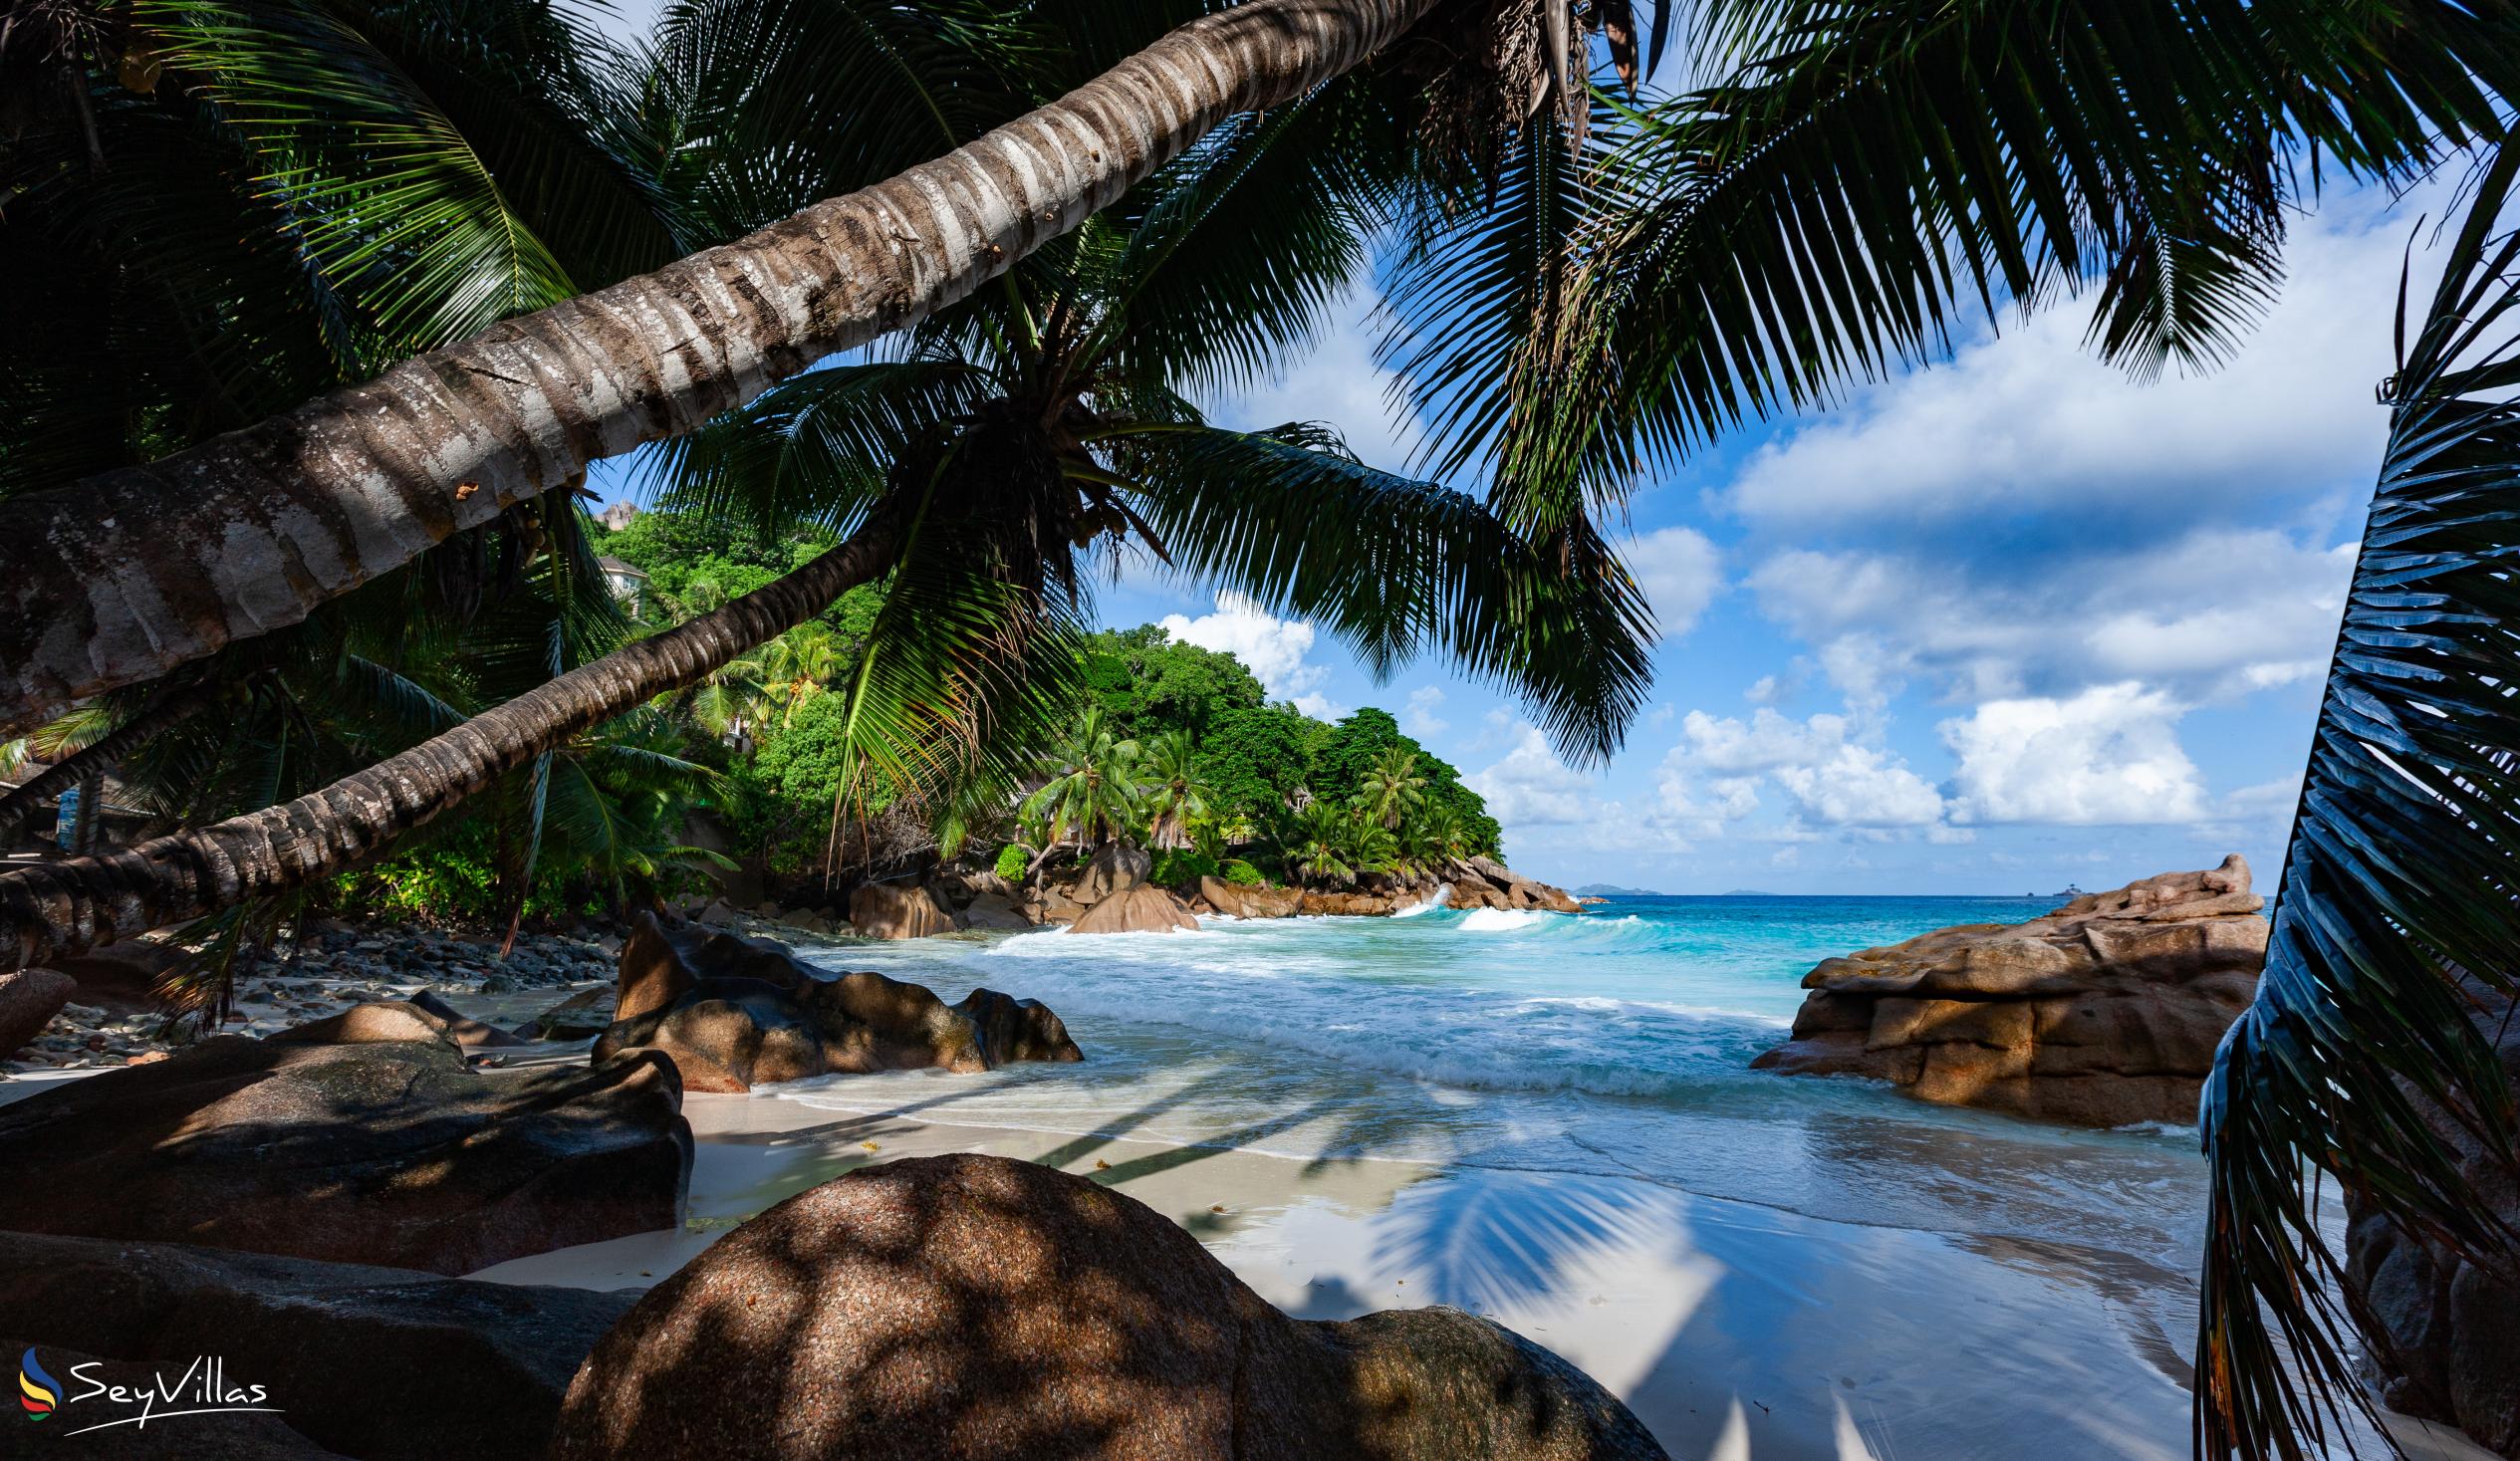 Photo 22: O'Soleil Chalets - Location - La Digue (Seychelles)